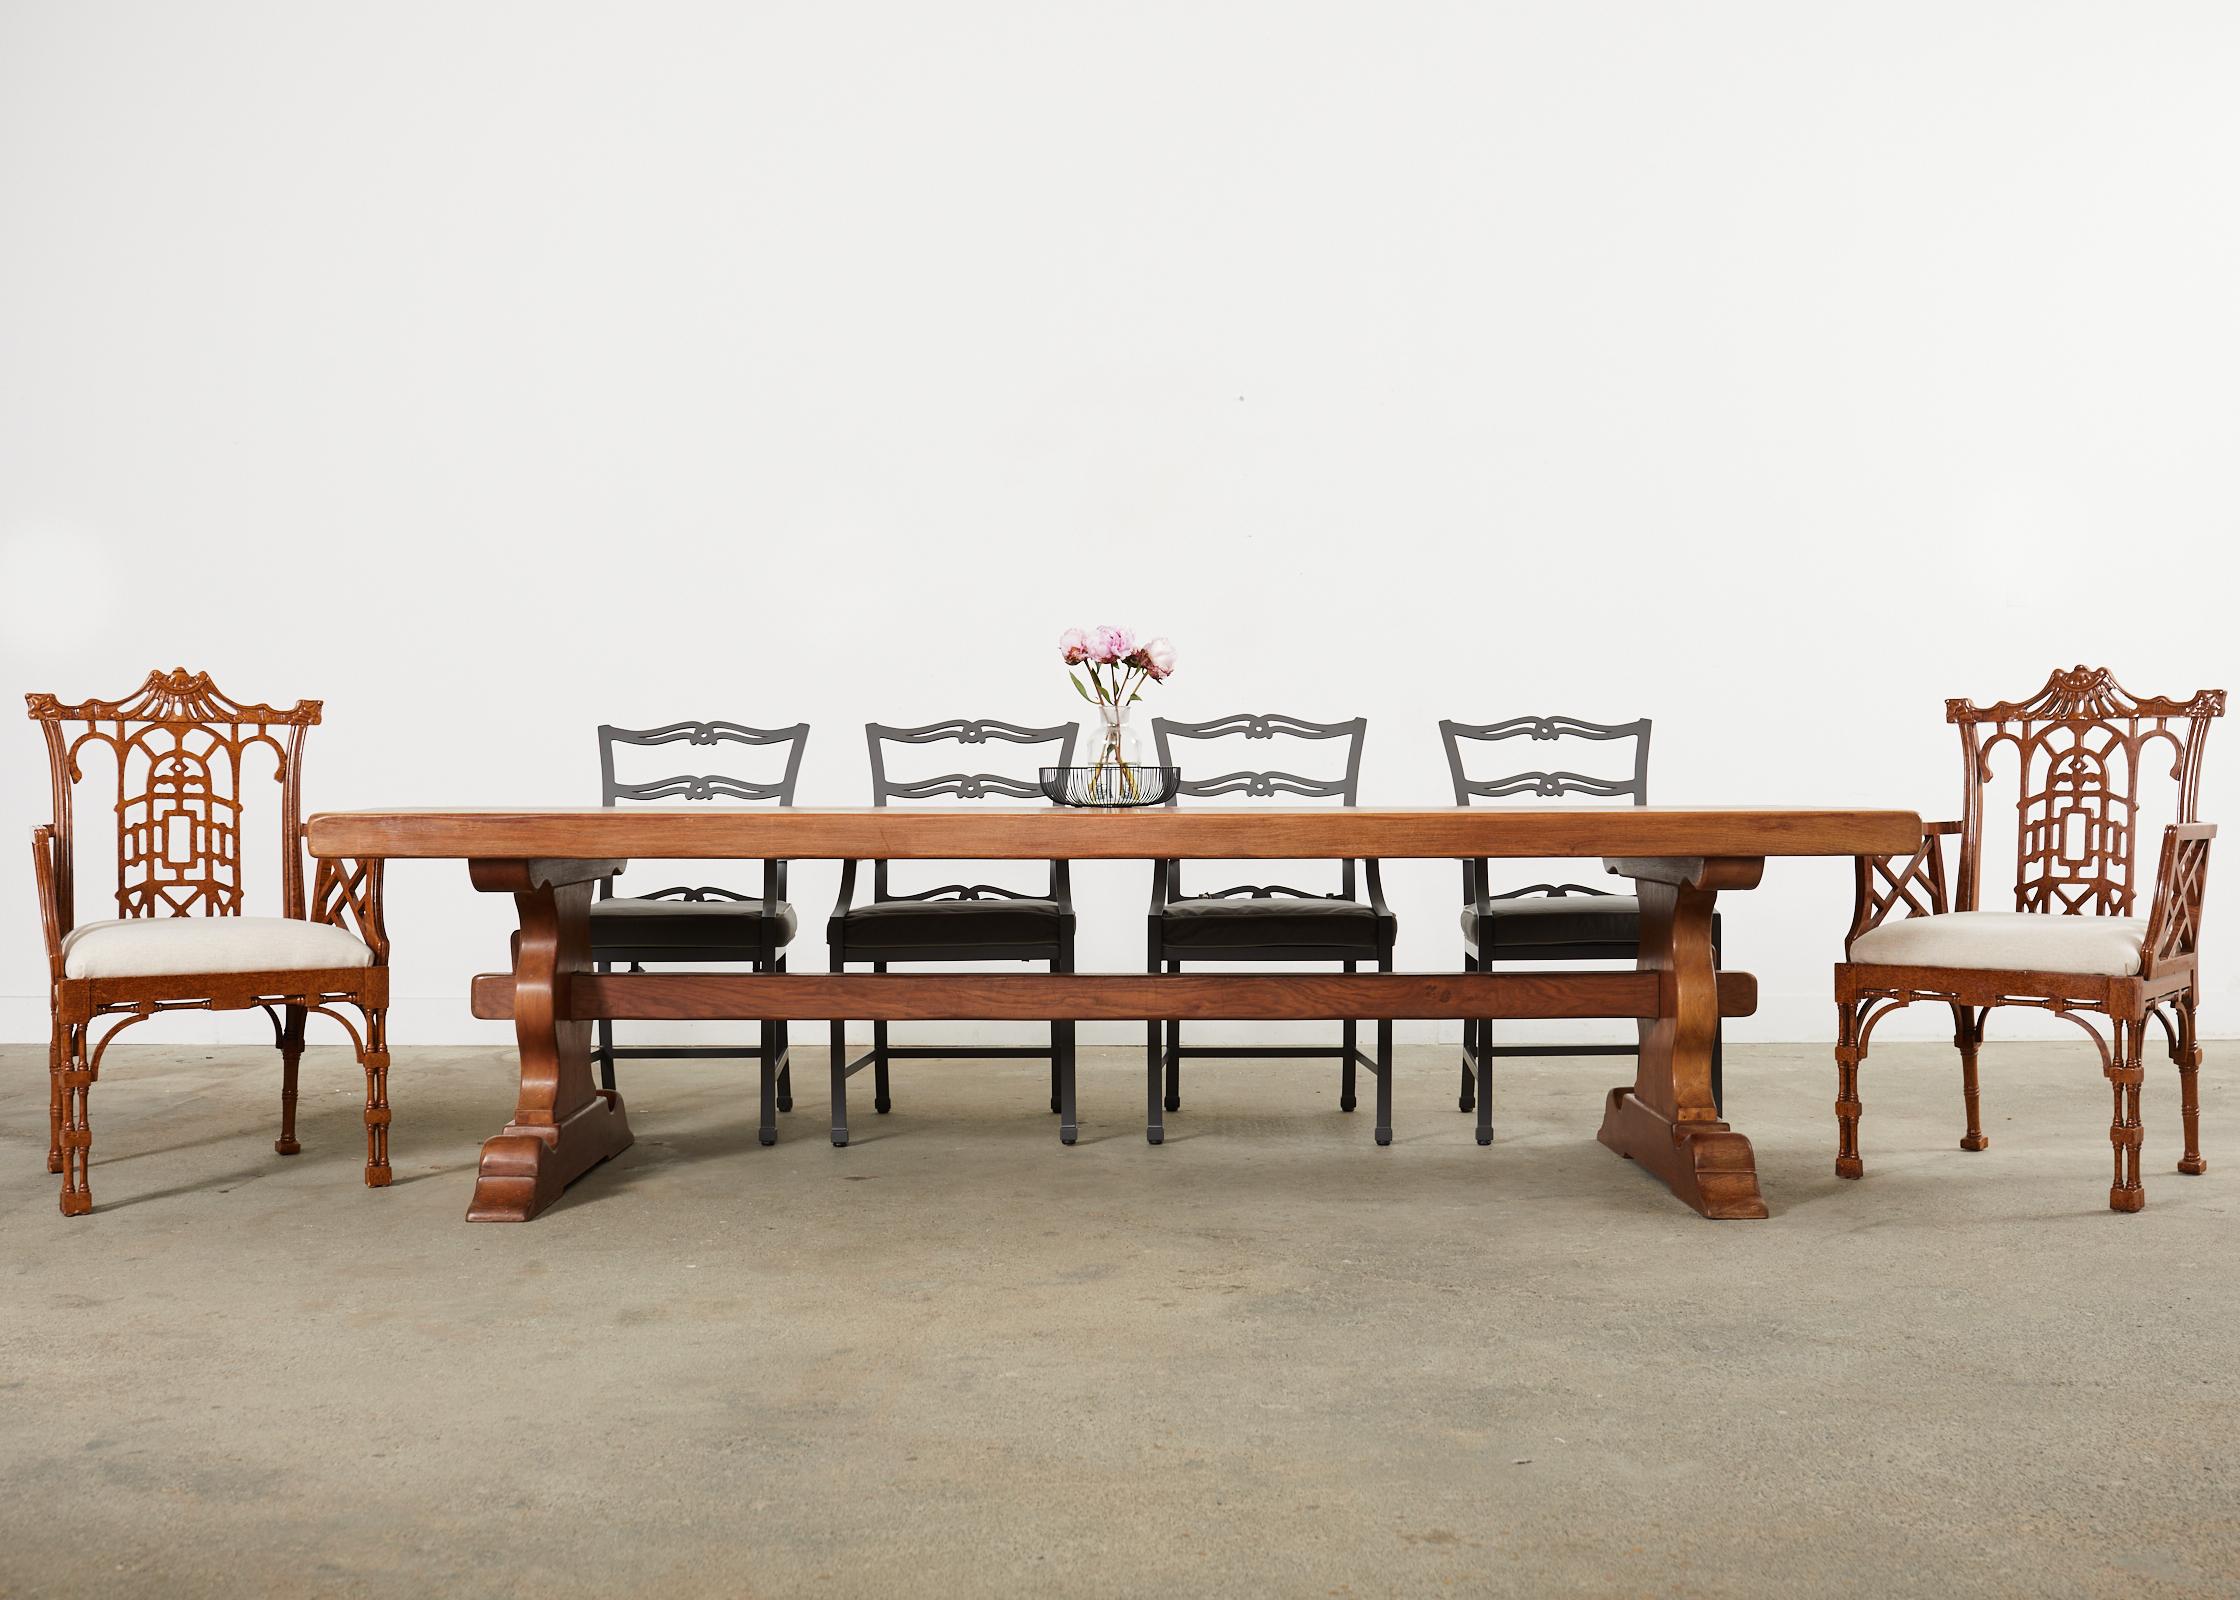 Massiver Esstisch im französischen Landhausstil aus Eichenholz. Der große Tisch hat eine 3,5 Zoll dicke Platte aus massiver Eiche. Die Platte wird von einem Gestell mit balusterförmigen Beinen getragen, die durch freiliegende Schlitz- und